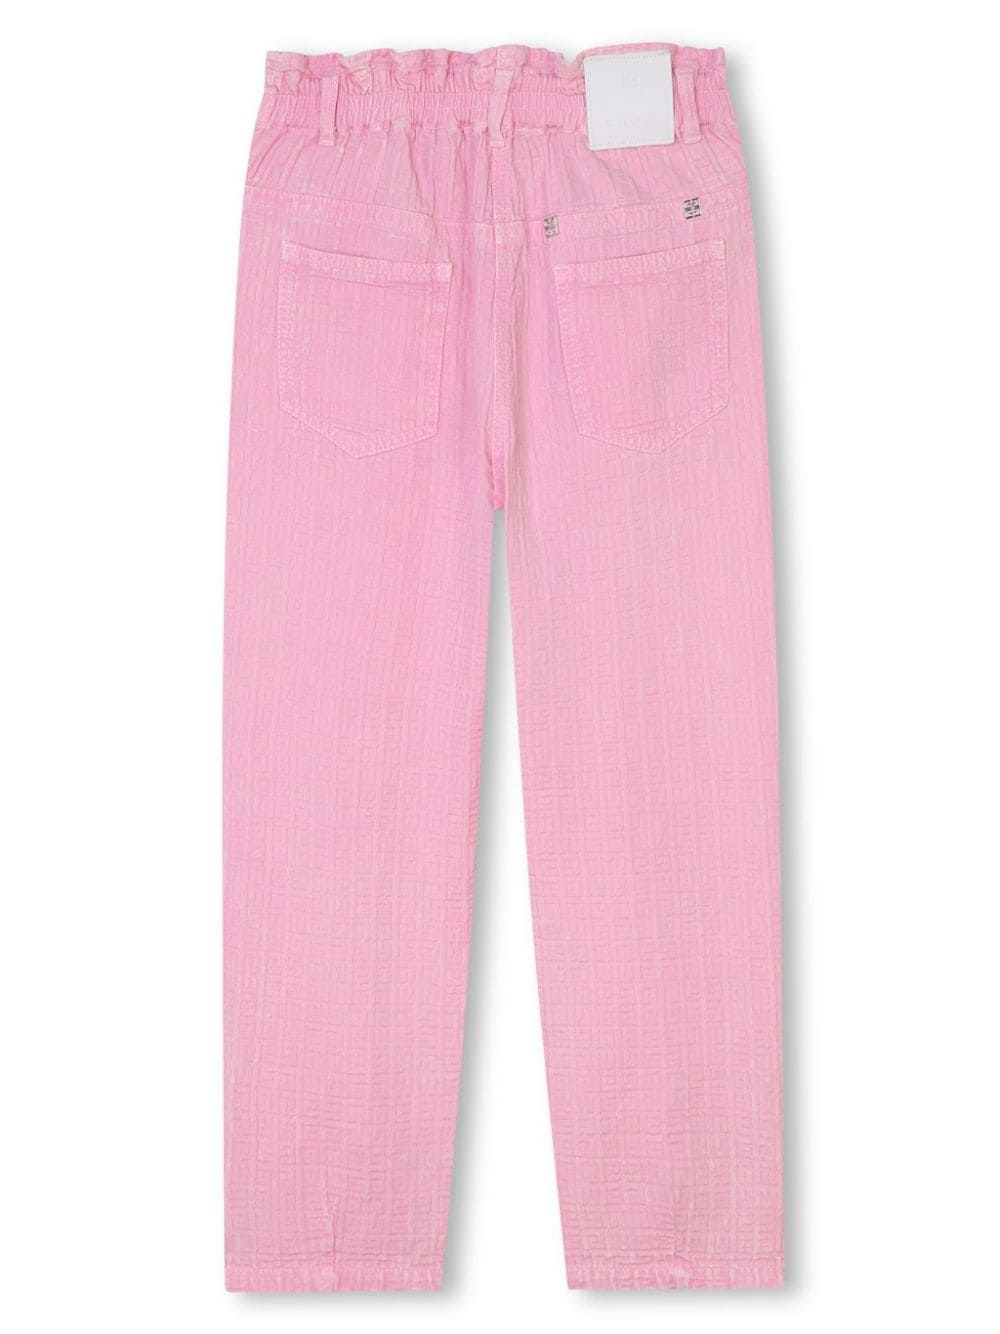 Pantaloni bambina rosa